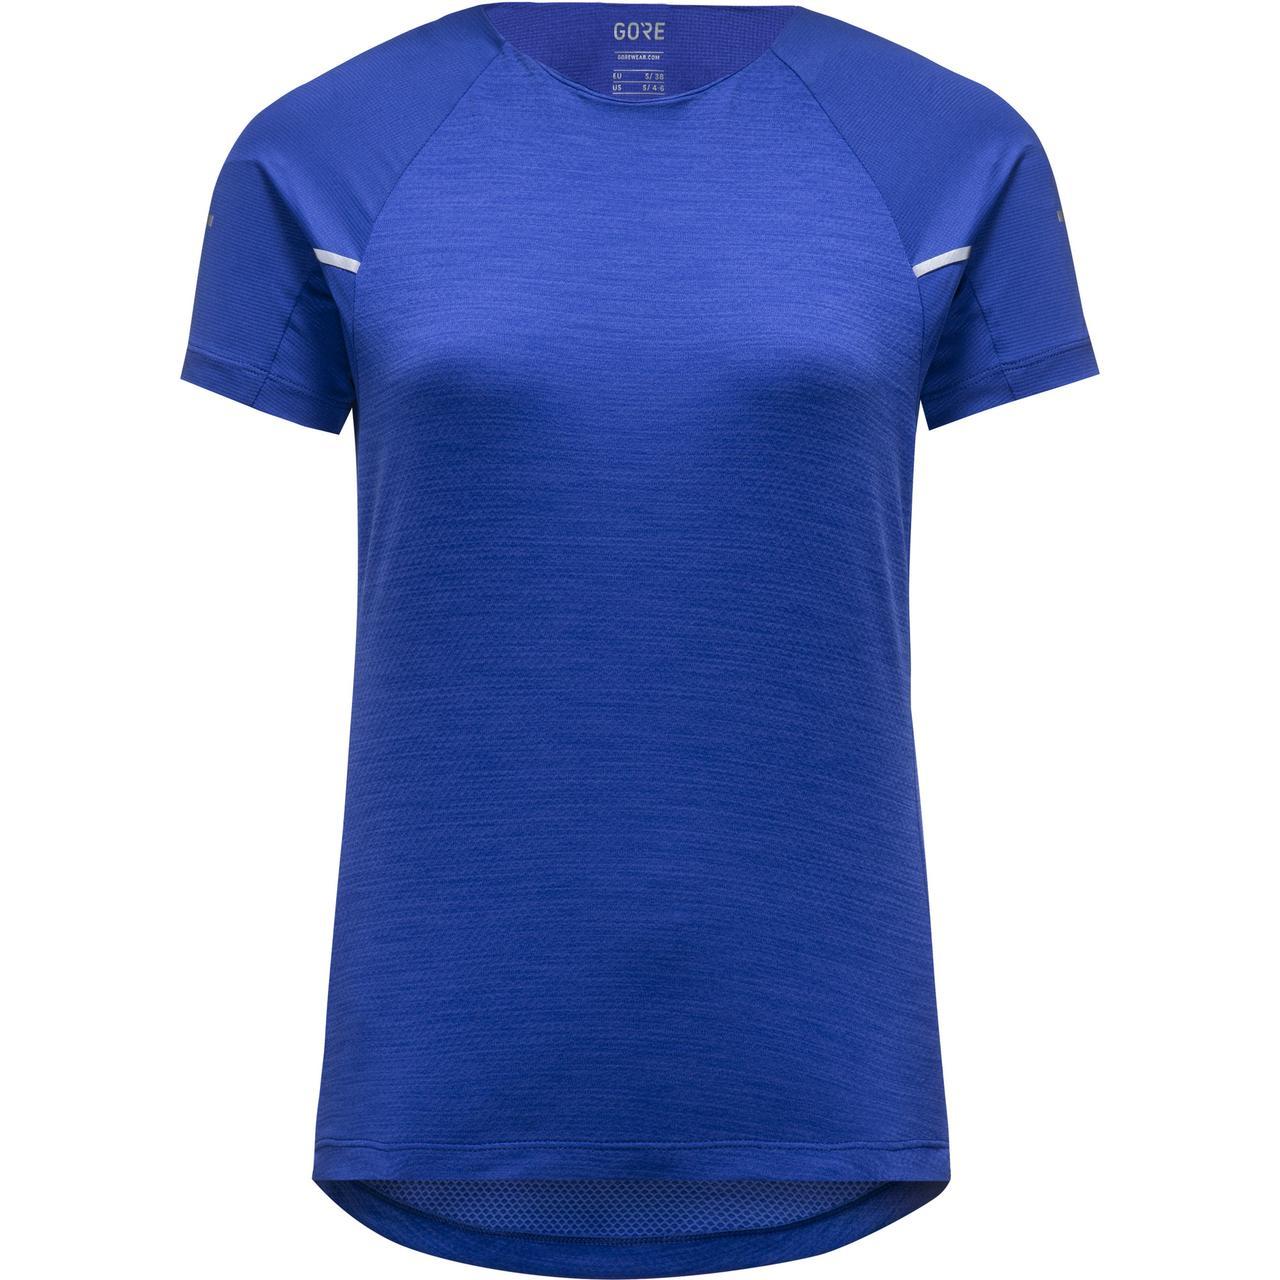 Gorewear Womens Vivid Running Shirt - Ultramarine Blue